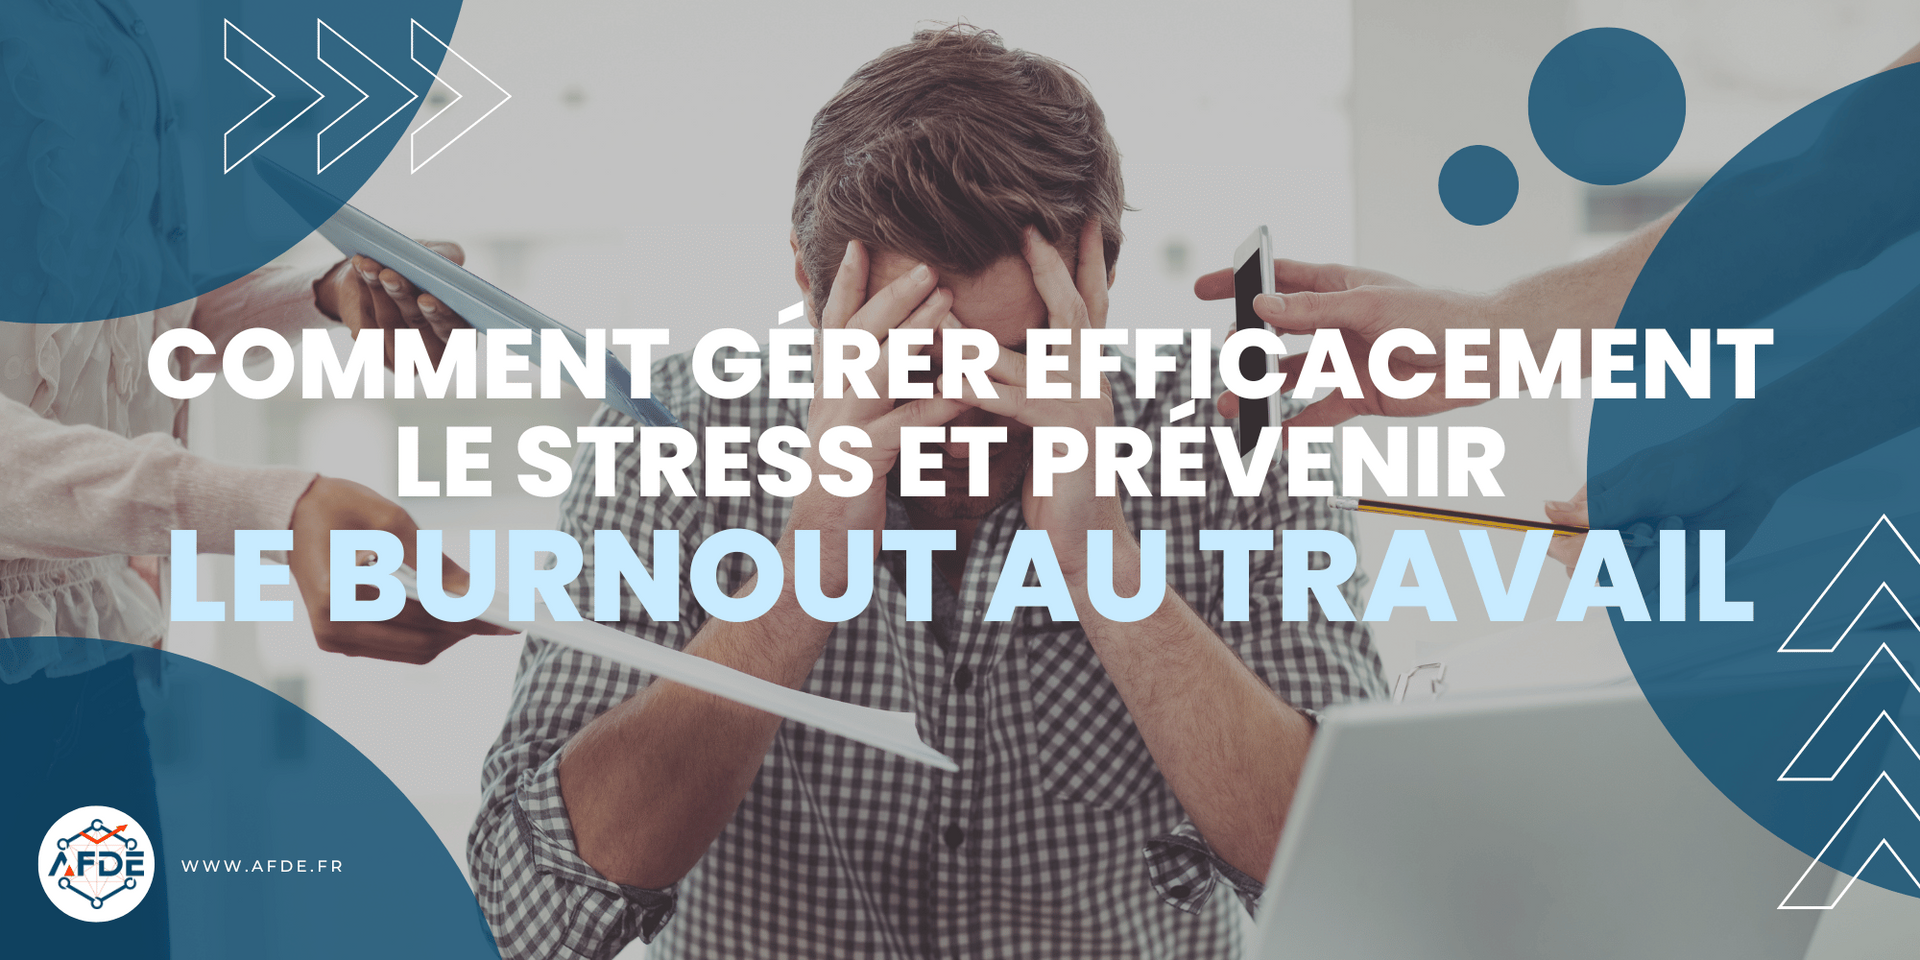 Comment gérer efficacement le stress et prévenir le burnout au travail.